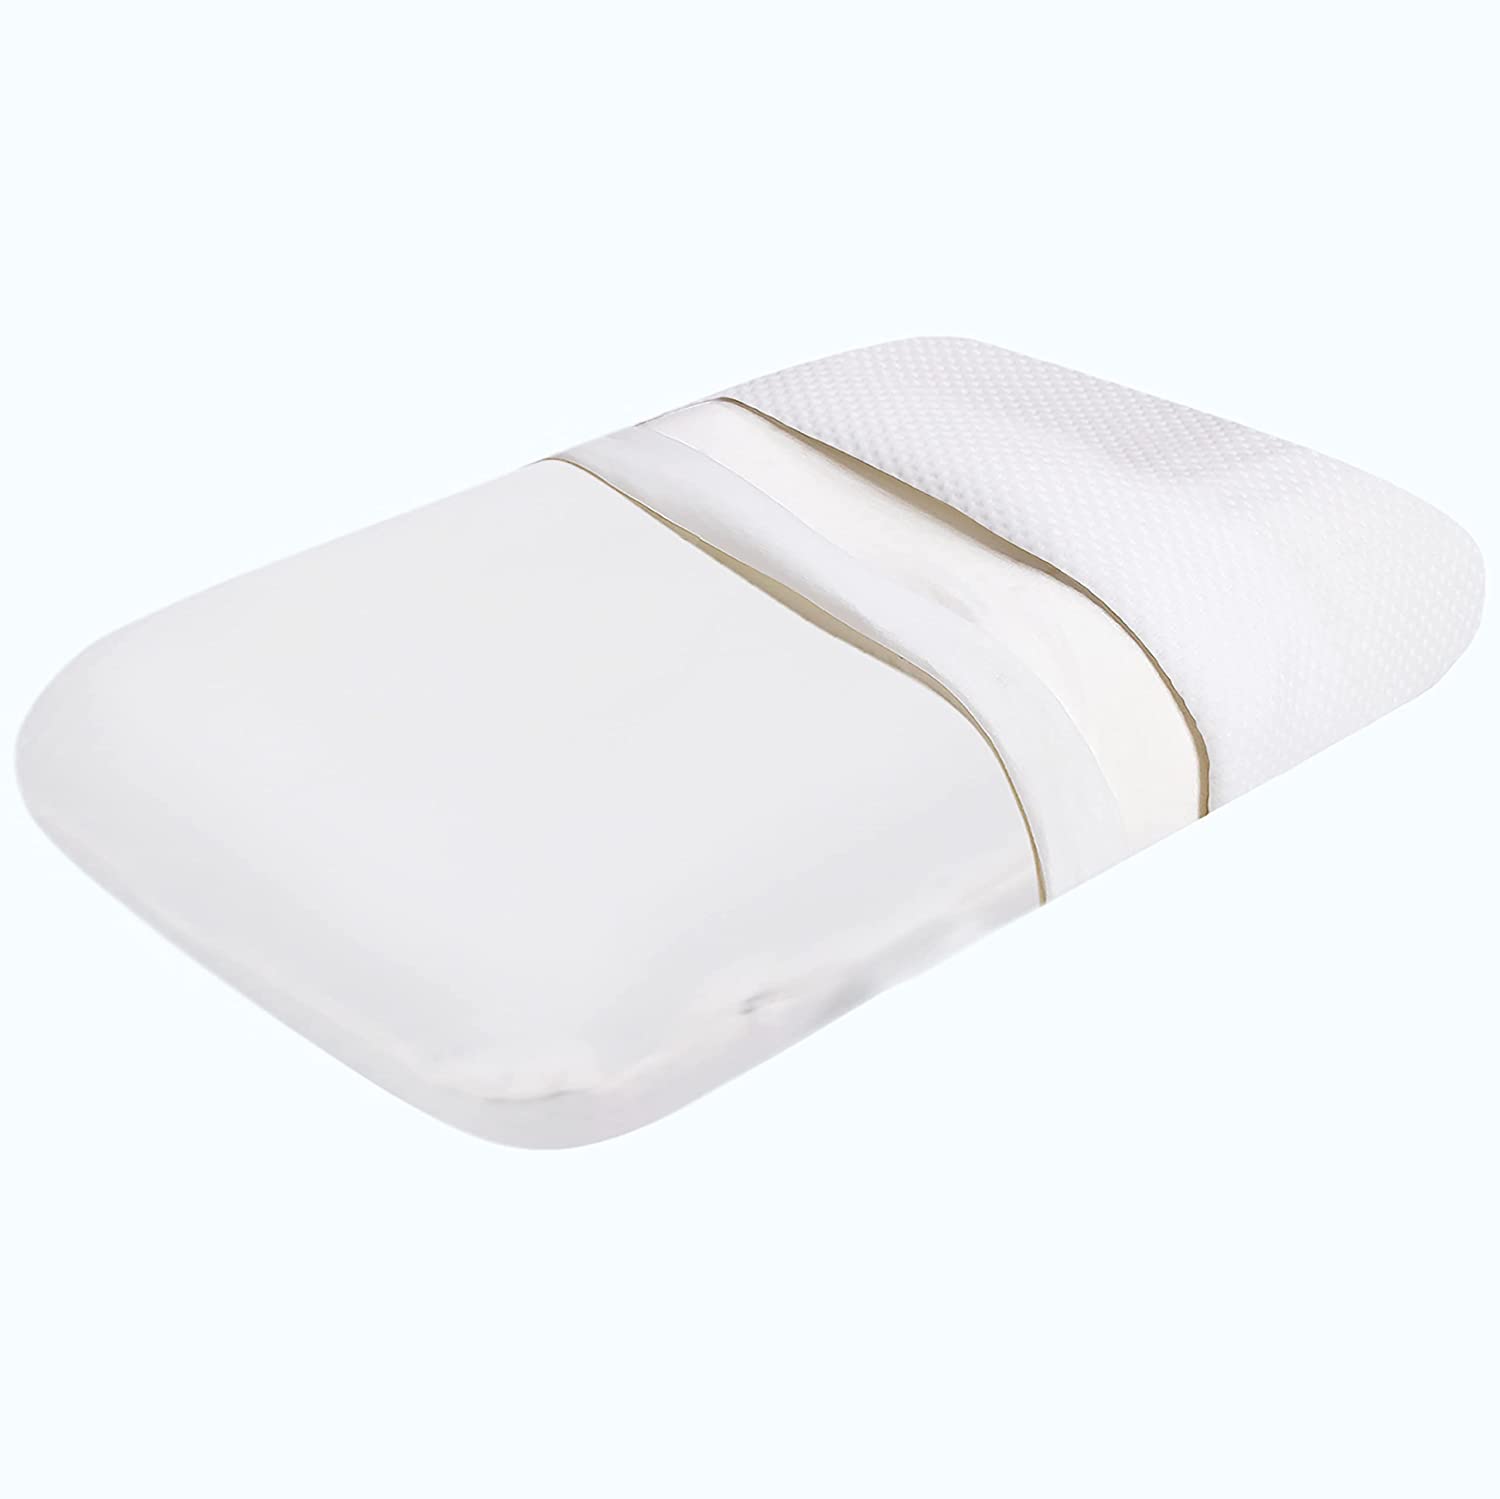 Orthopedic Memory Foam Cervical Pillow